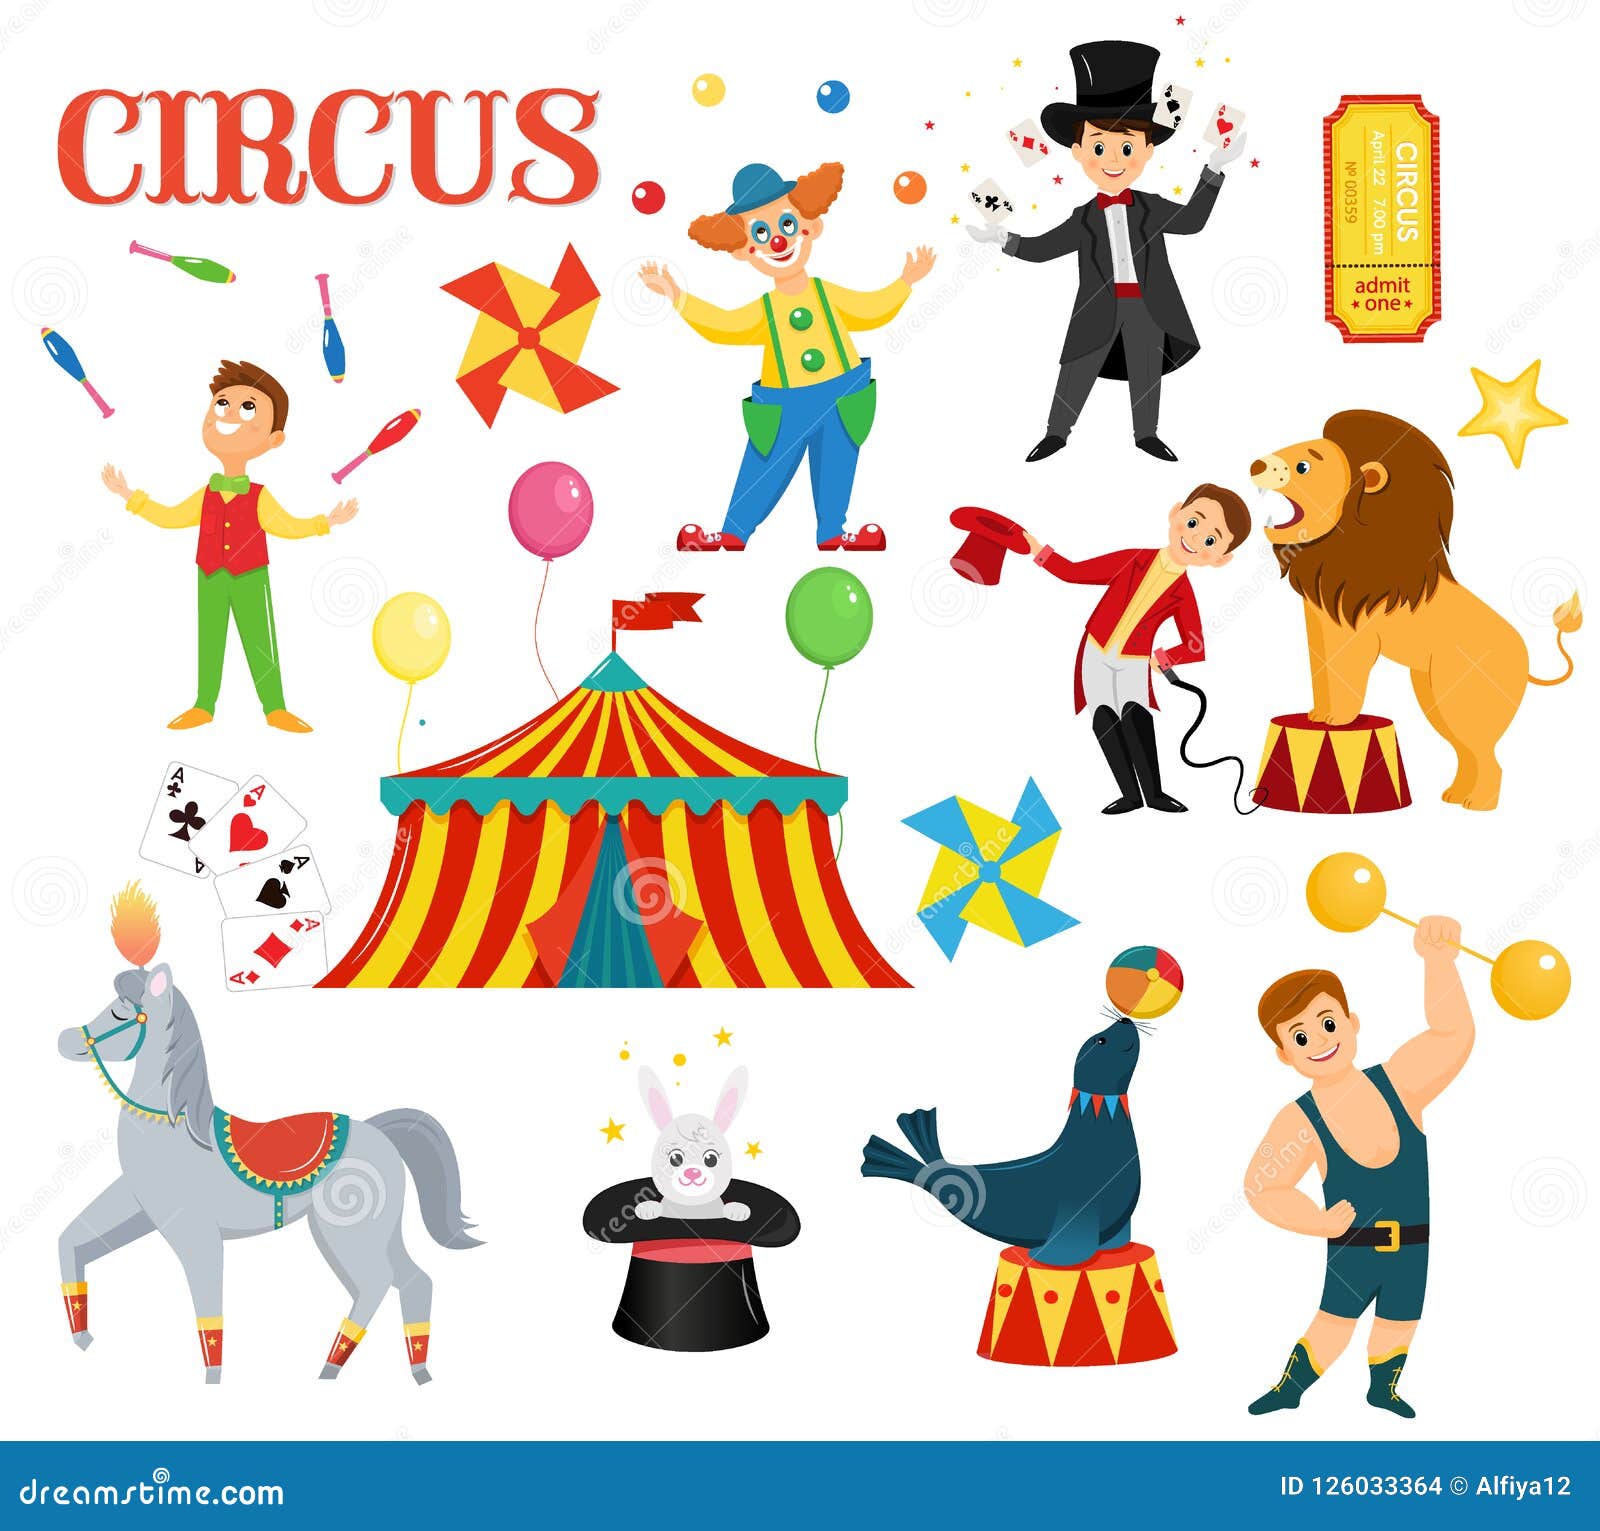 a set of circus artists